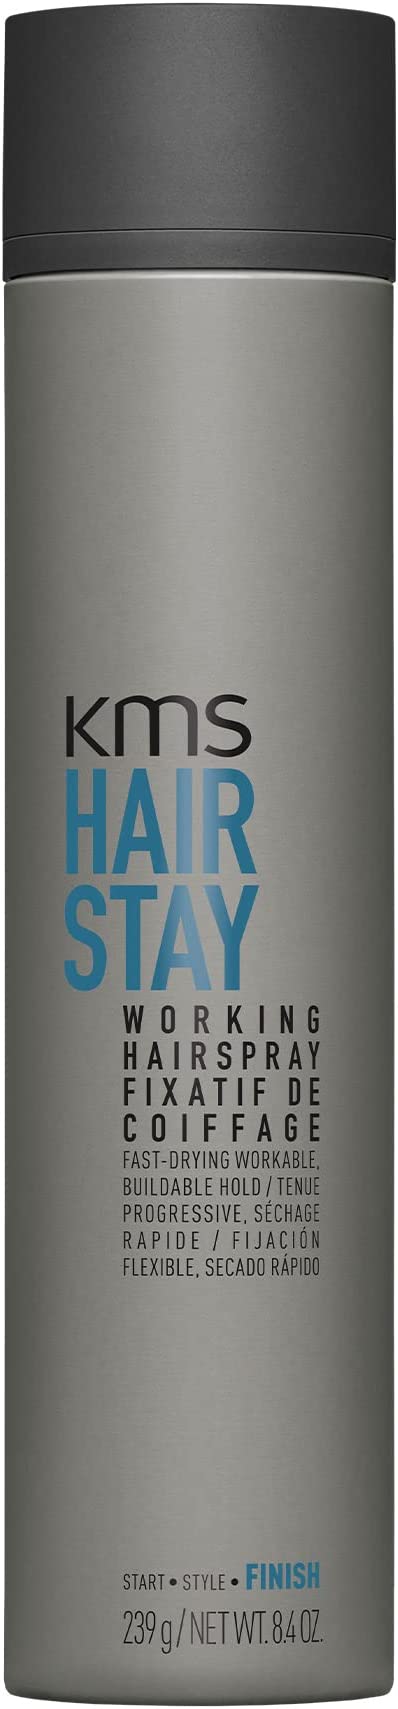 KMS Working Hairspray 300ml